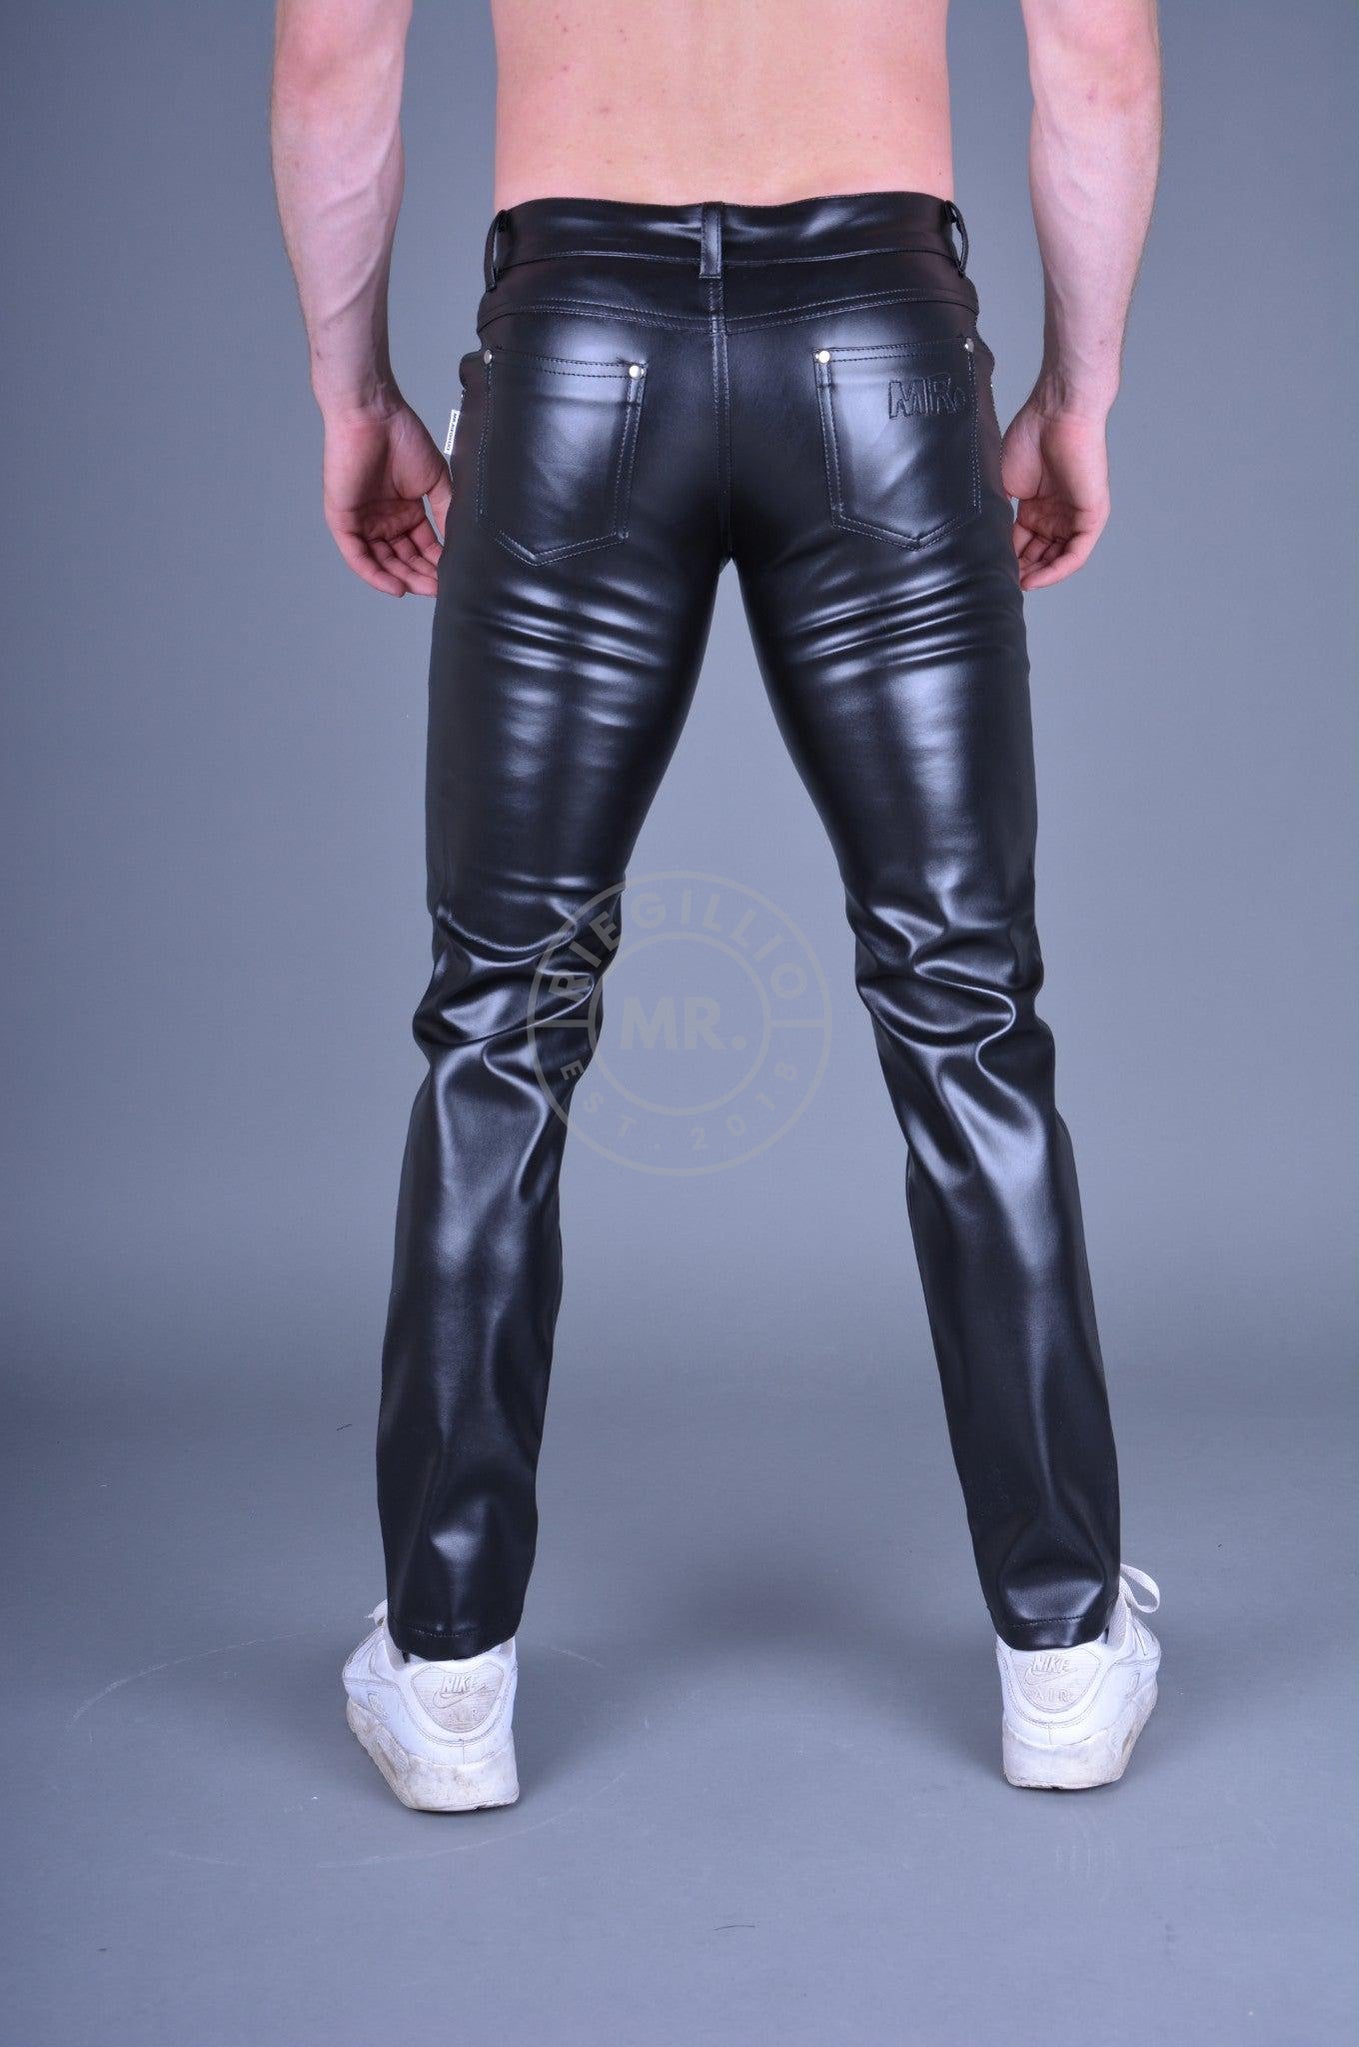 MR. 5-Pocket Pants black at MR. Riegillio